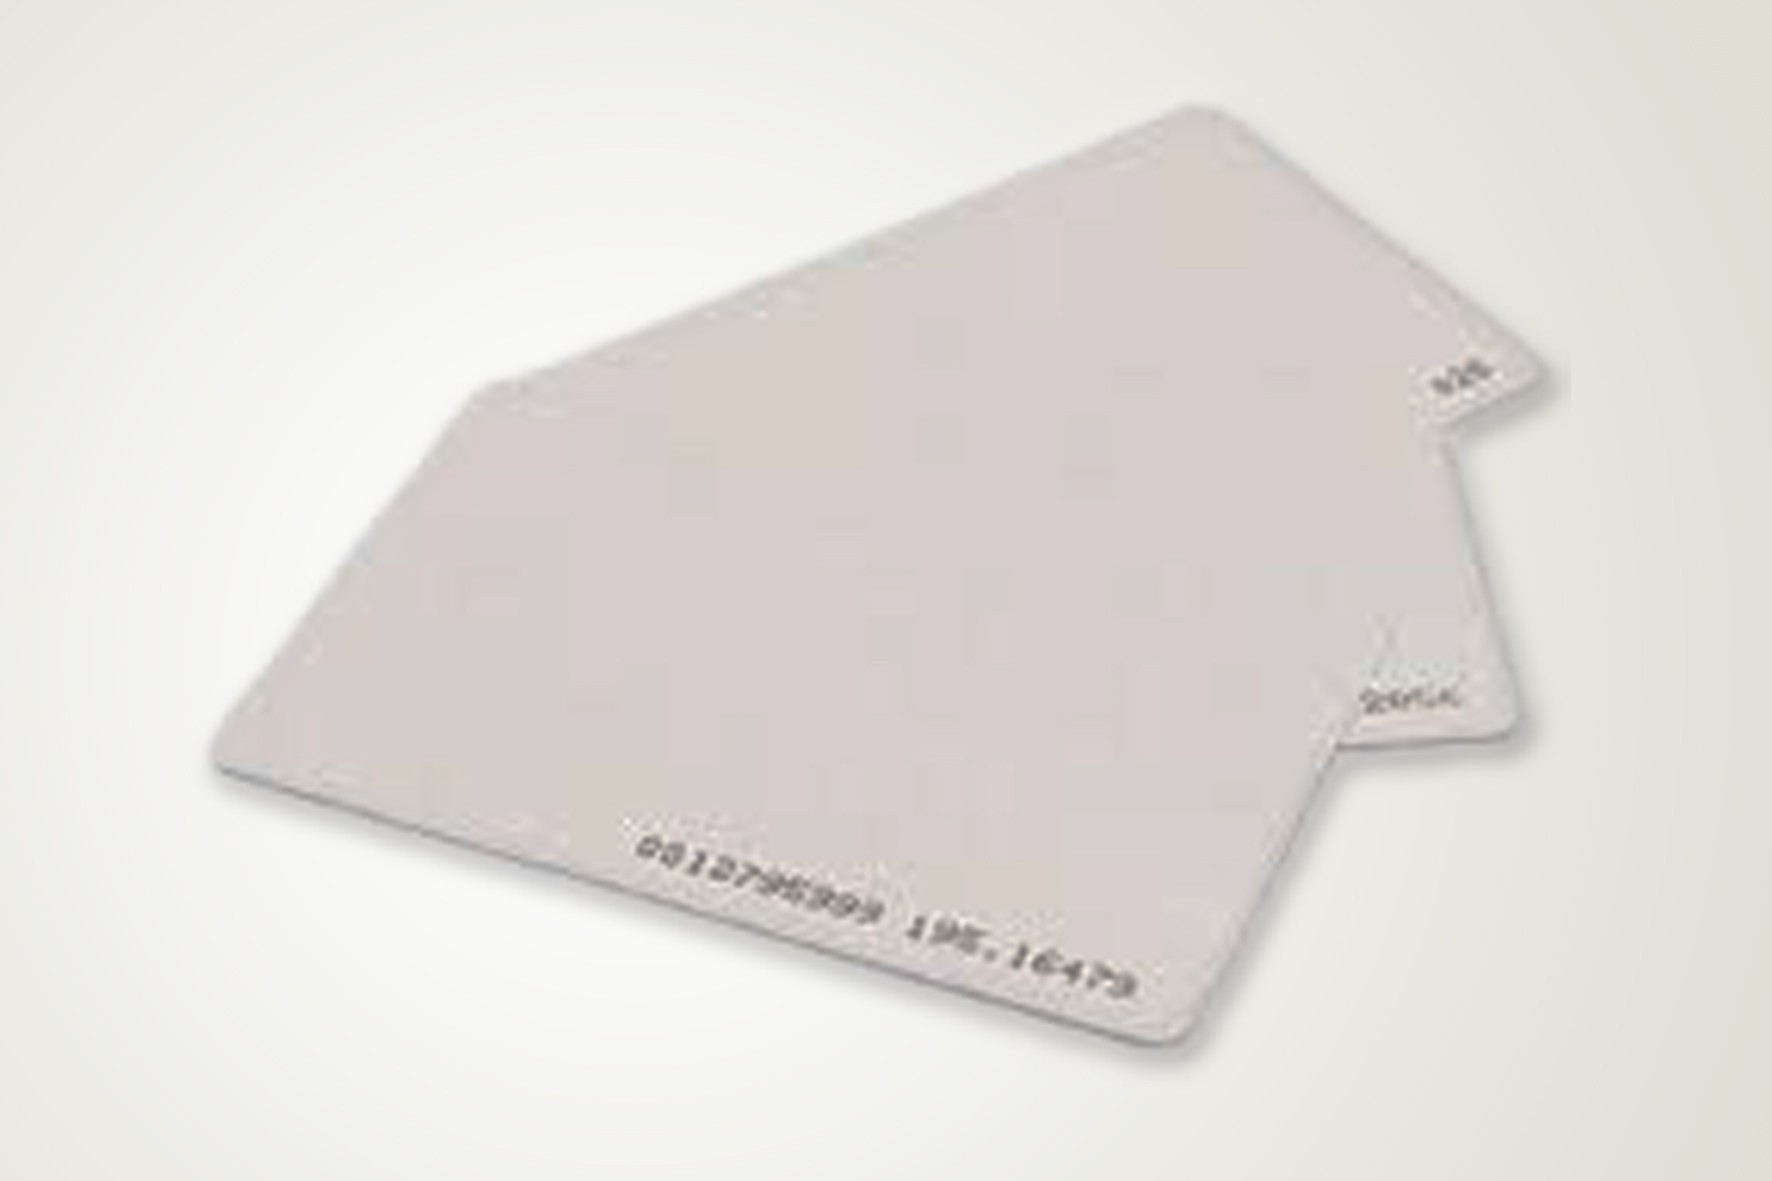 Cartão com Chip de Aproximidade no Taboão - Placas de Pvc